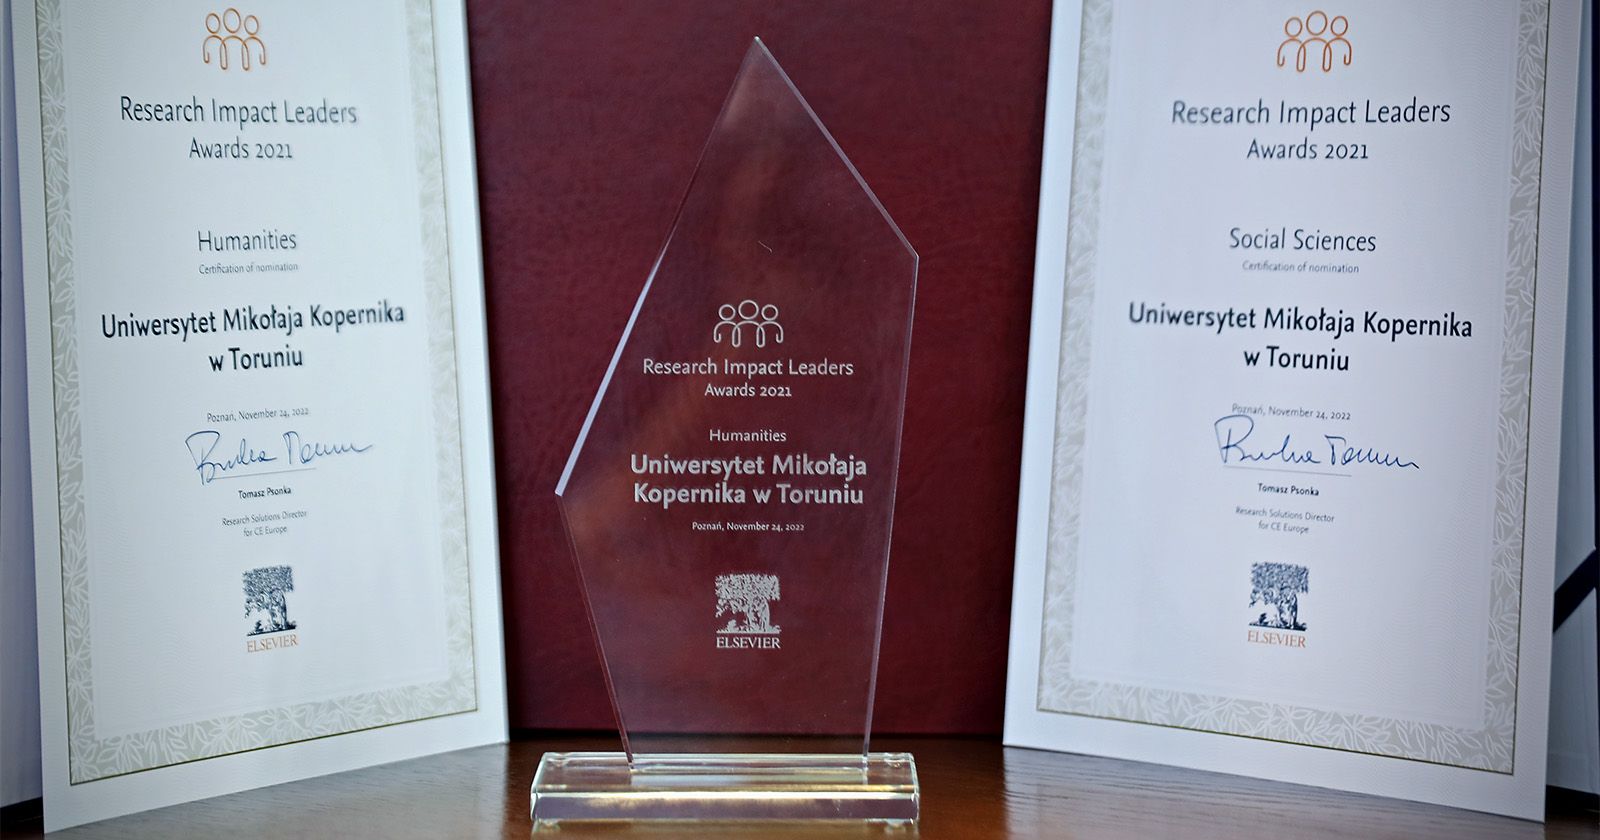 Uniwersytet Mikołaja Kopernika w Toruniu został doceniony w kategorii "Humanities" i "Social Sciences" Statuetka i dwa dyplomy Research Impact Leaders